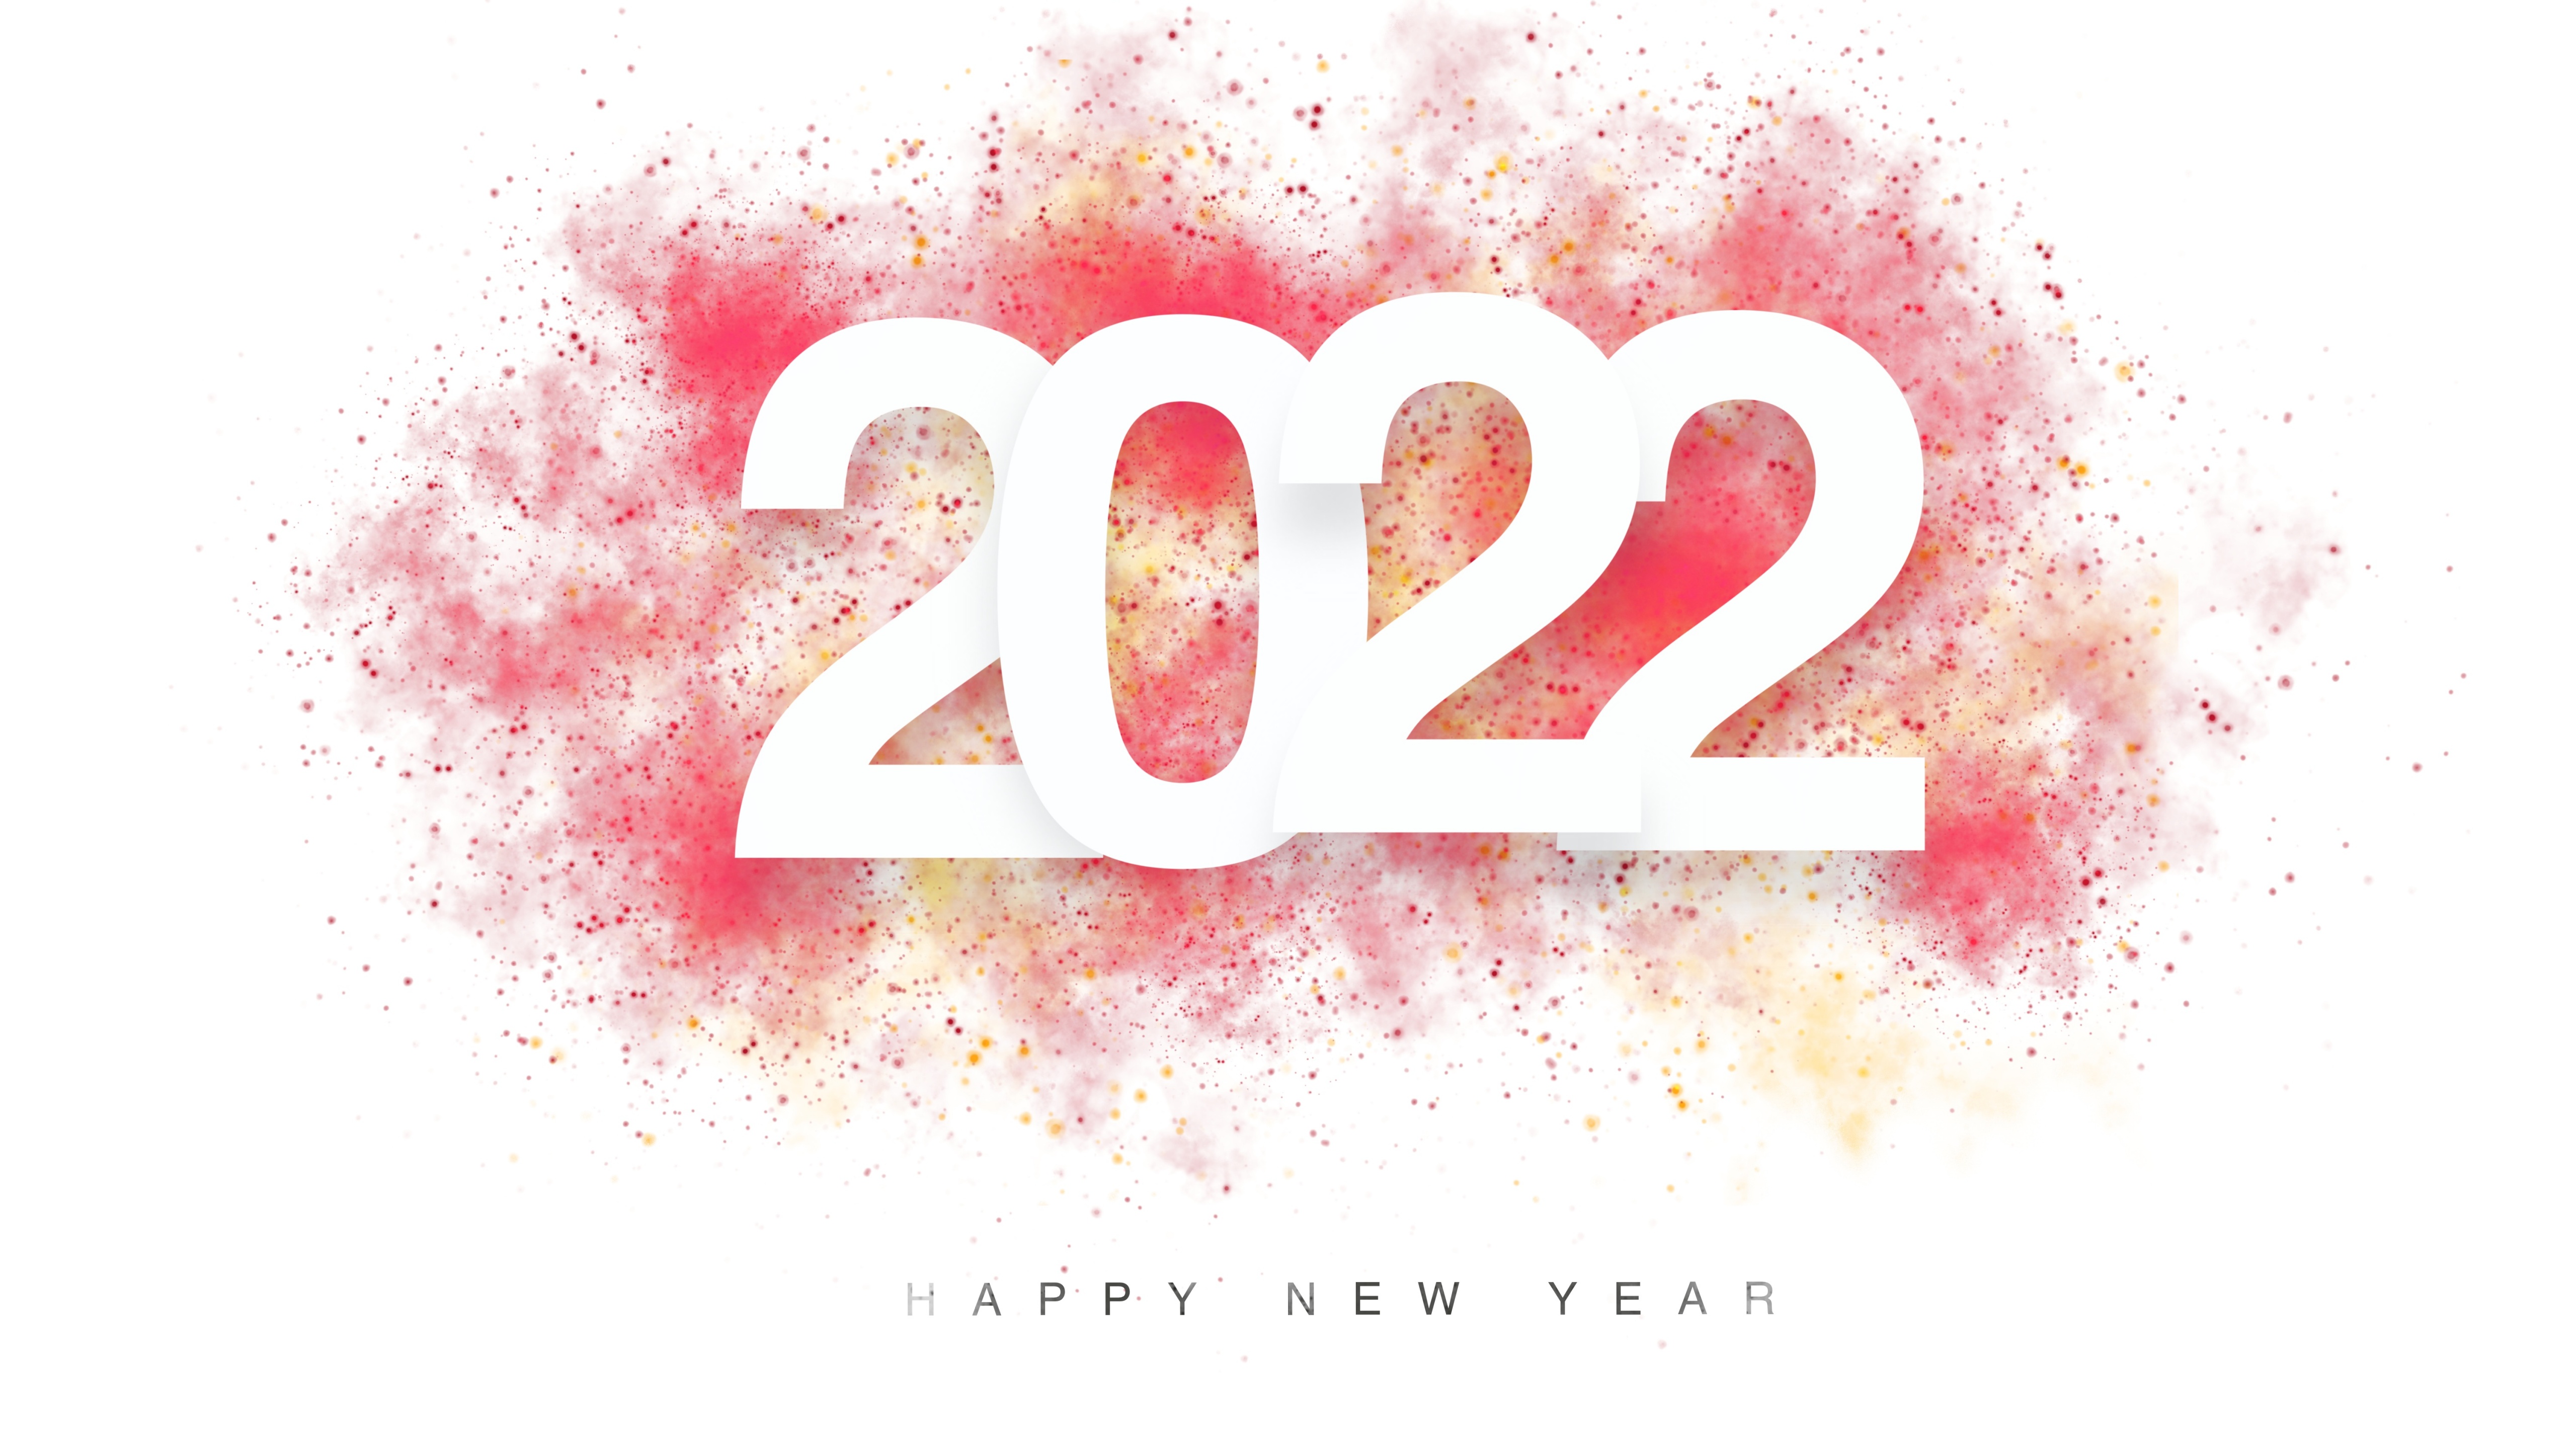 Chào đón năm mới 2022 với những kỳ vọng, hy vọng và ý tưởng mới mẻ! Hãy cùng đón xem hình ảnh đẹp sắc màu của bầu trời đêm đầu năm mới này nhé!